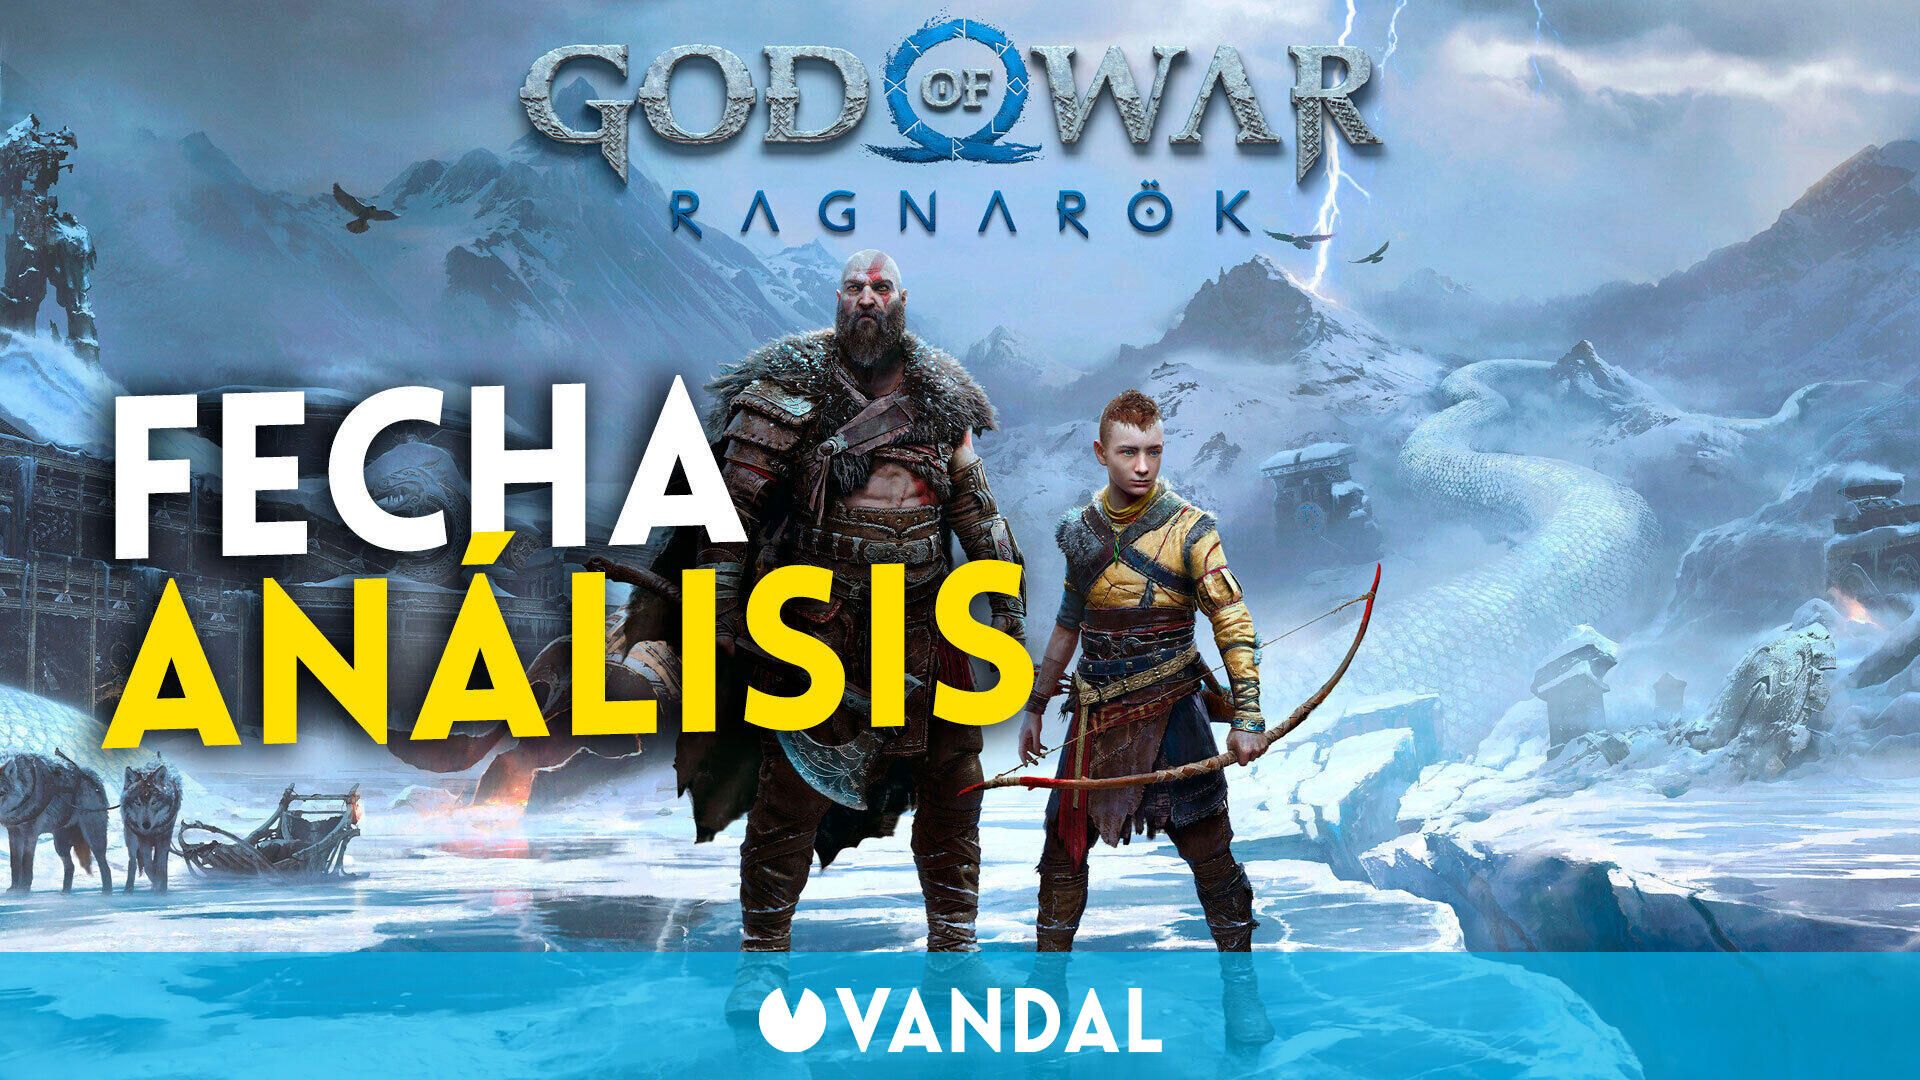 Ya jugando a God of War Ragnarok y publicaremos su análisis el 3 noviembre - Vandal